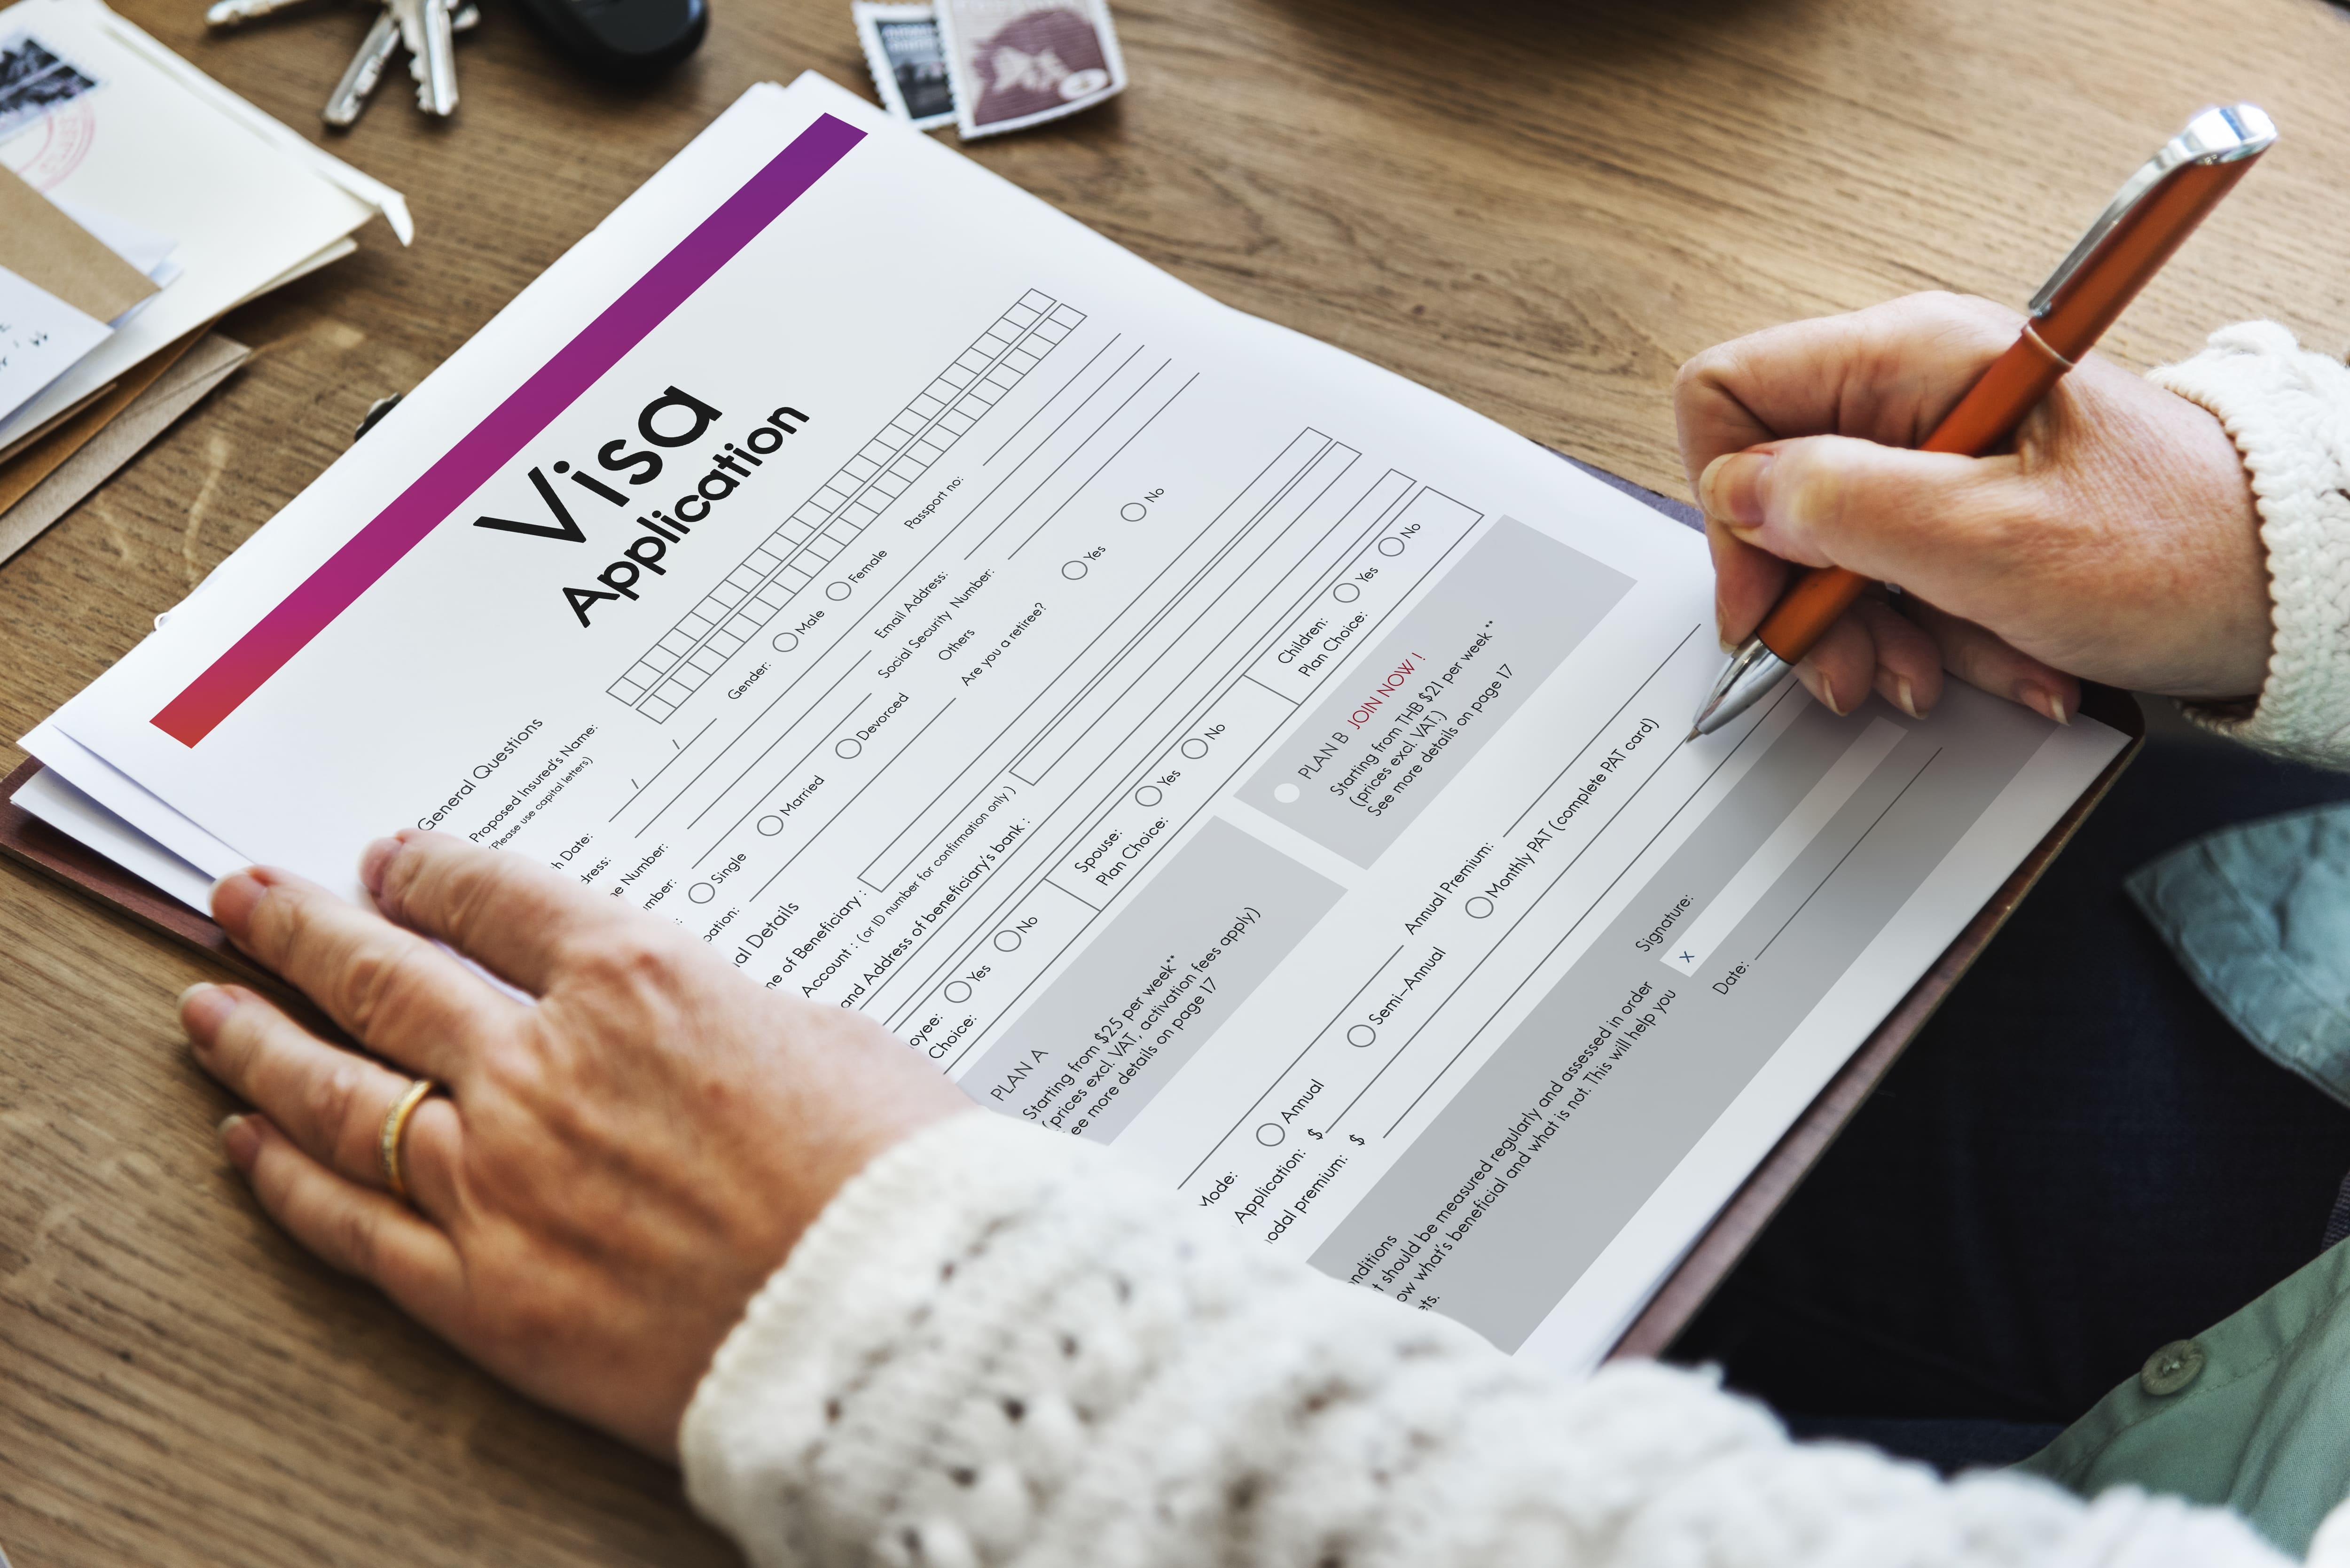 52 countries can obtain e-visas